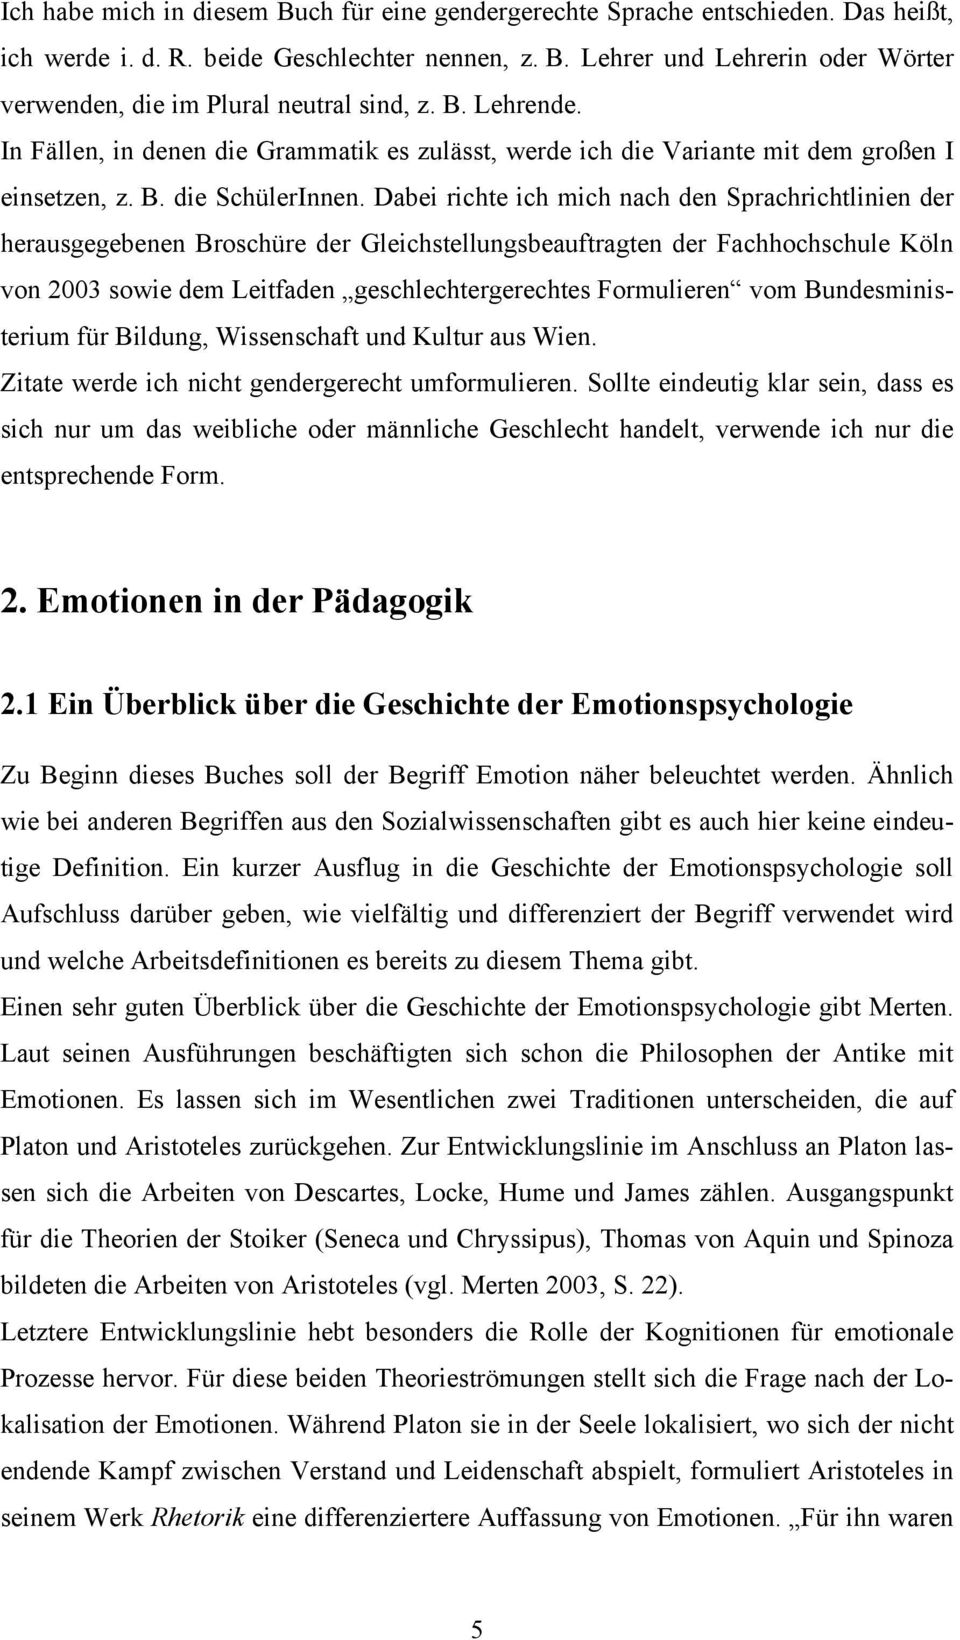 Dabei richte ich mich nach den Sprachrichtlinien der herausgegebenen Broschüre der Gleichstellungsbeauftragten der Fachhochschule Köln von 2003 sowie dem Leitfaden geschlechtergerechtes Formulieren